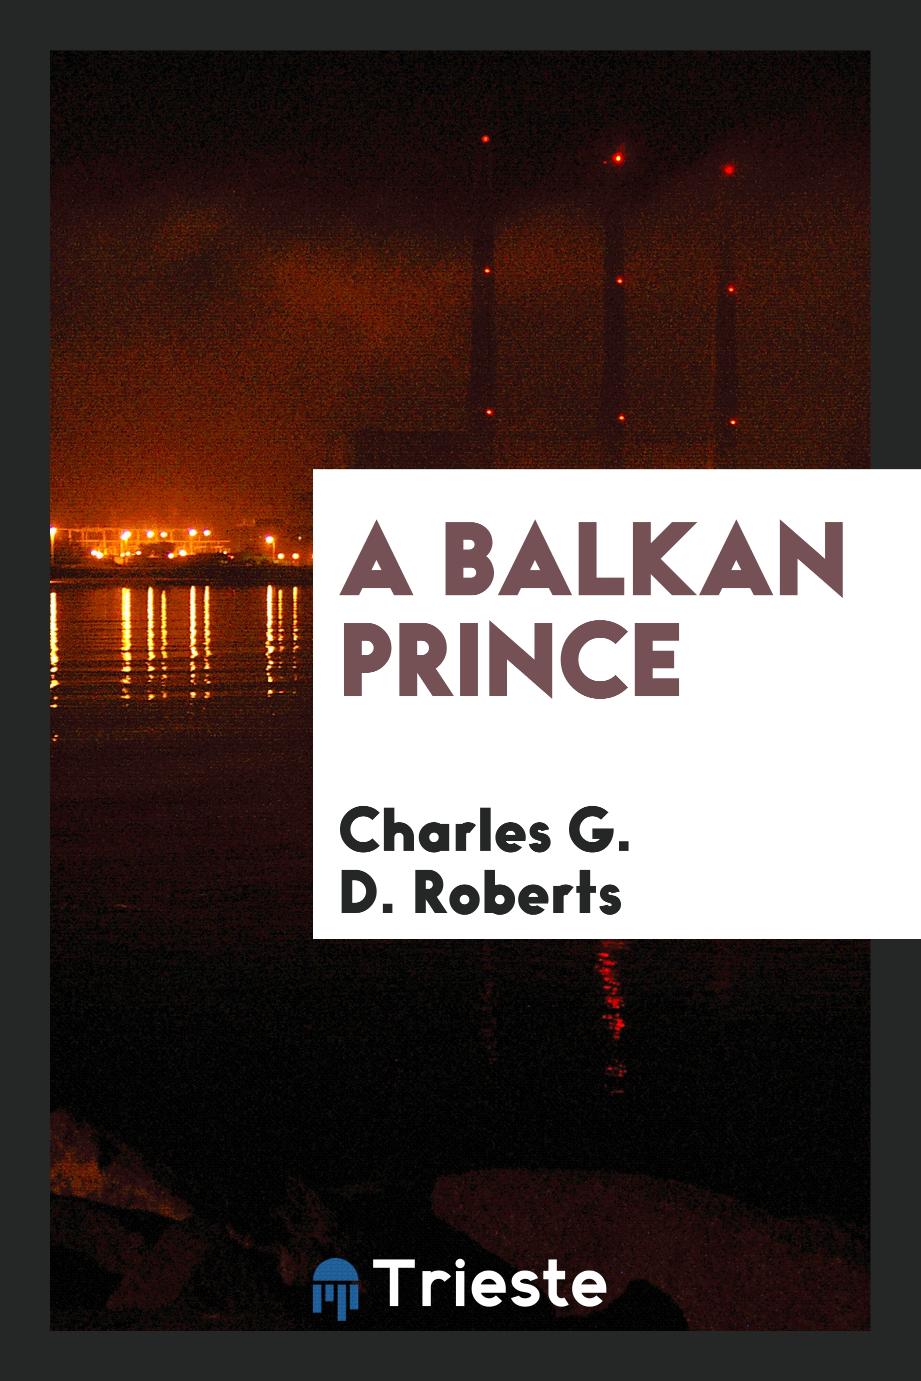 A Balkan prince